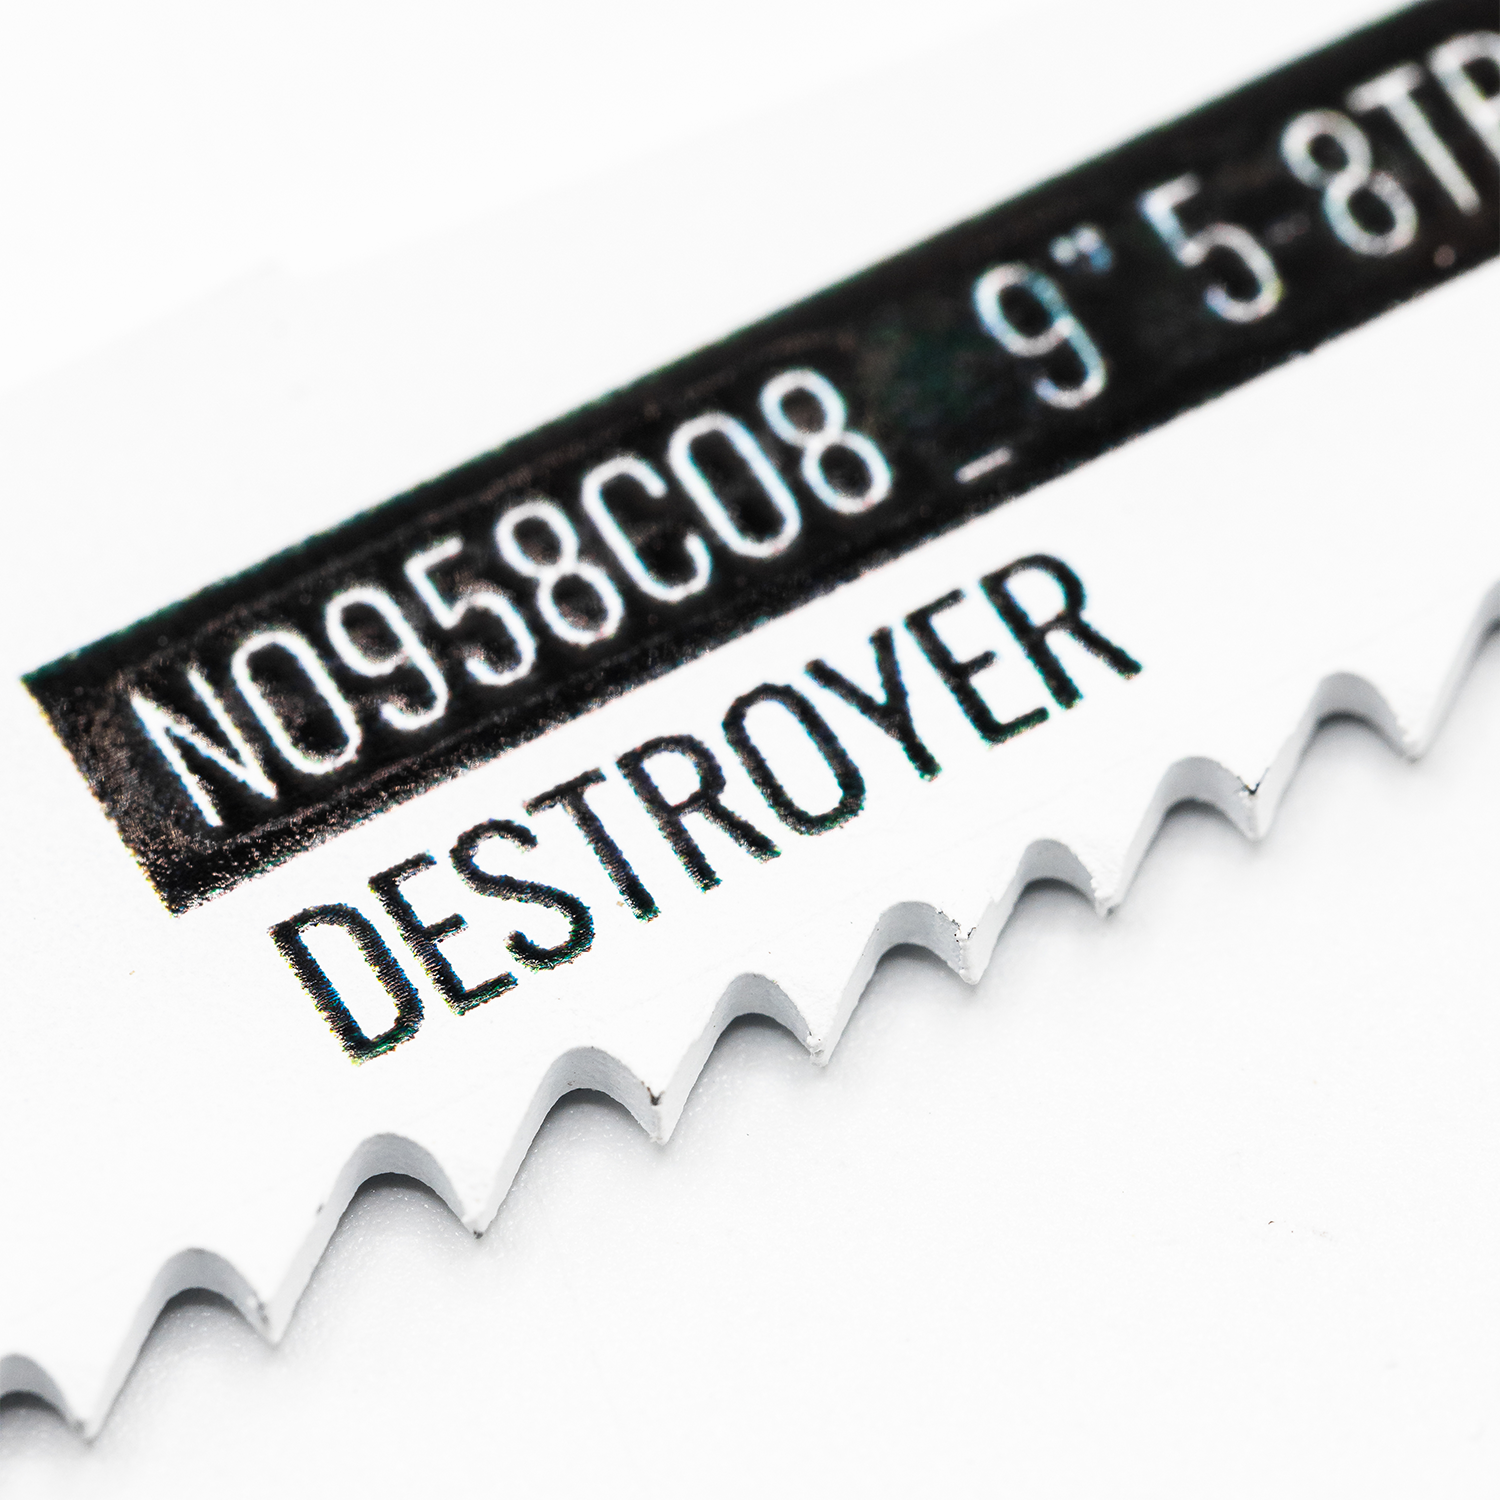 Destroyer reciprozaagblad voor hout/metaal 225mm